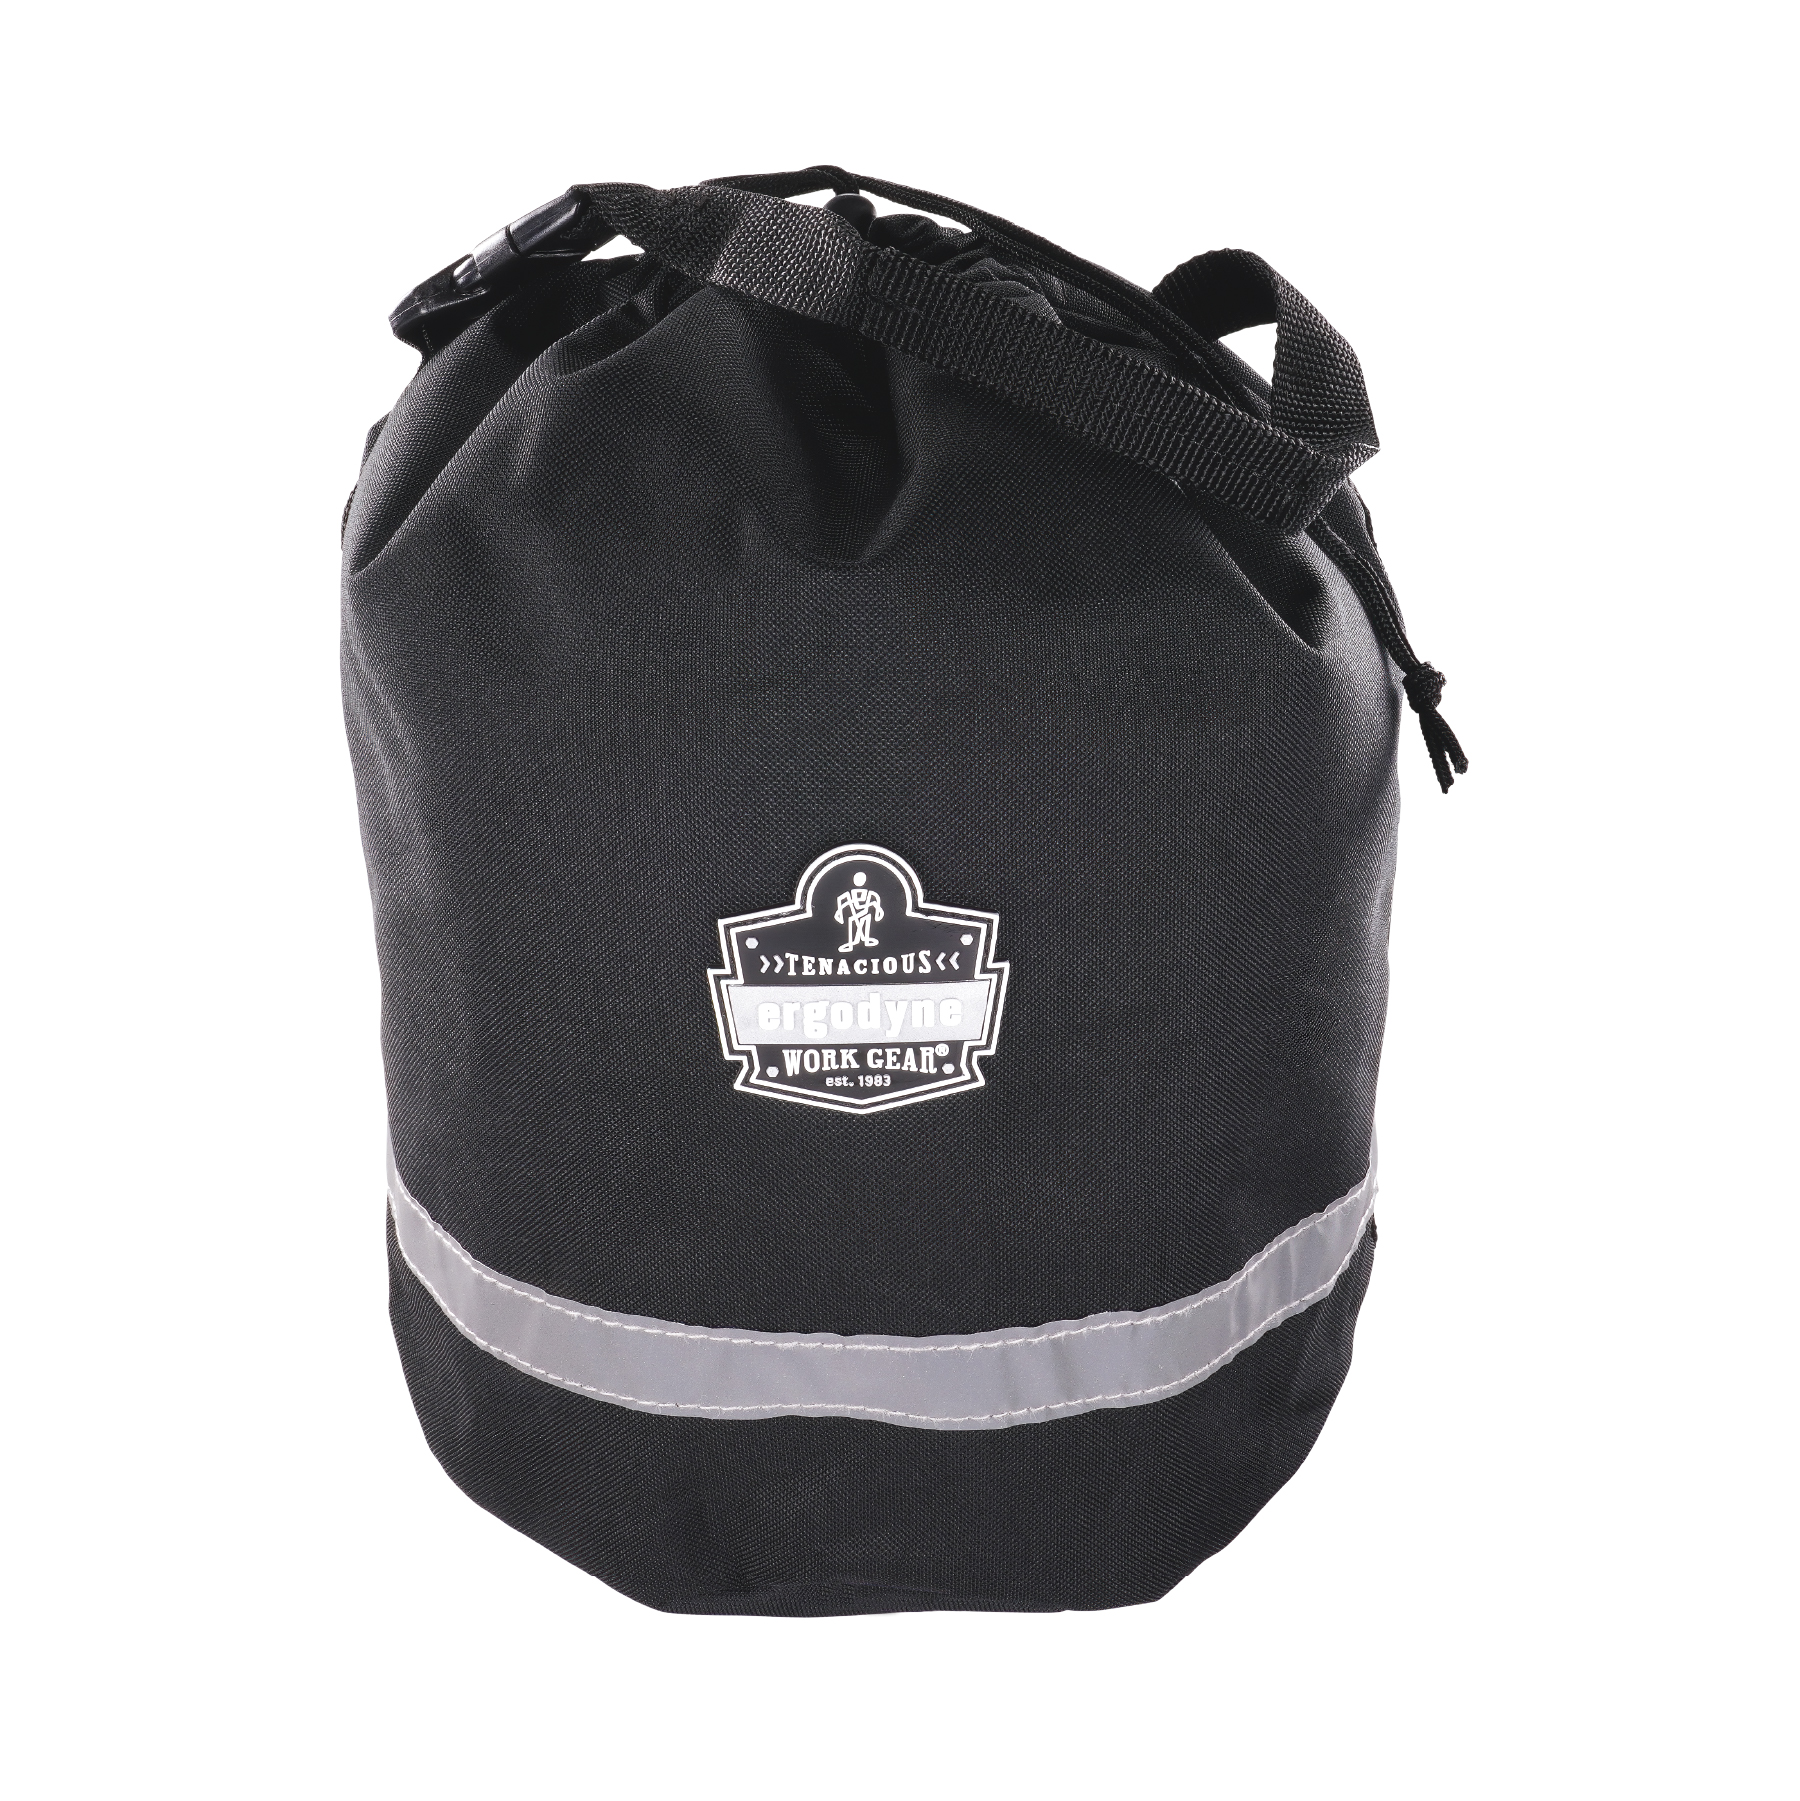 Standard Walker Side Bag :: side mount walker pouch with top flap